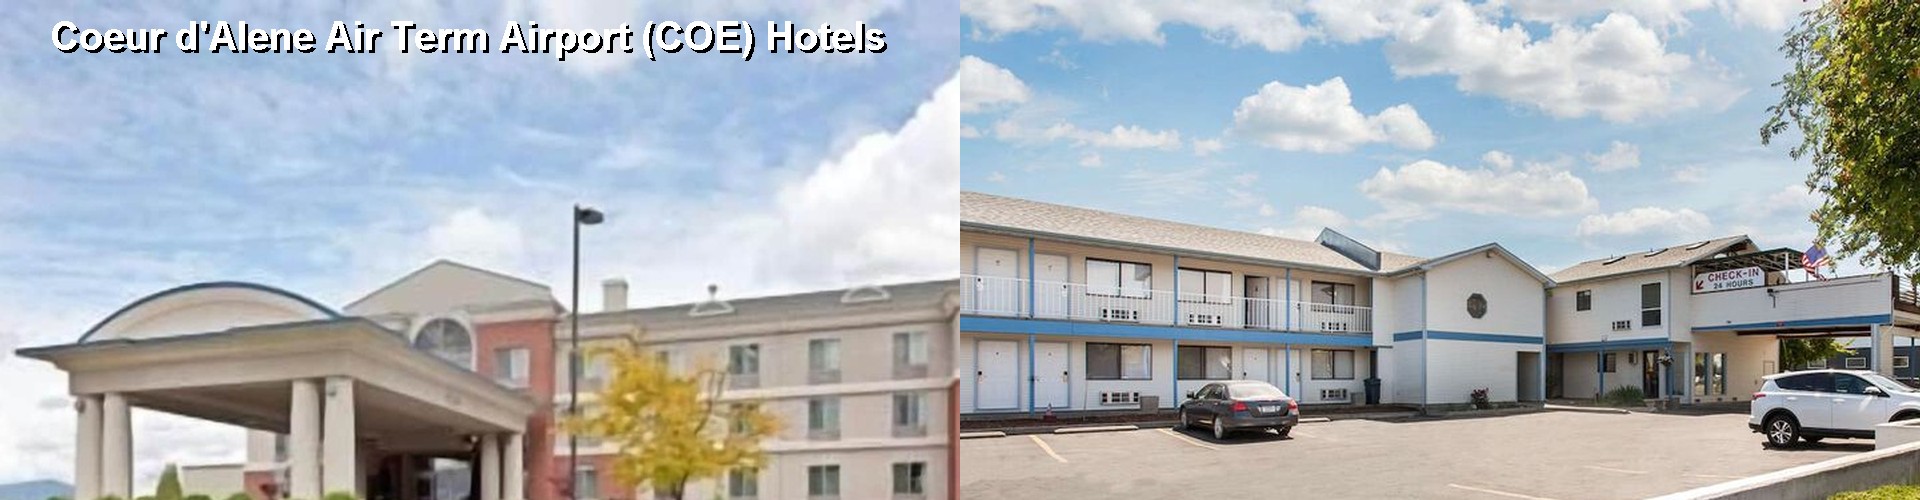 3 Best Hotels near Coeur d'Alene Air Term Airport (COE)